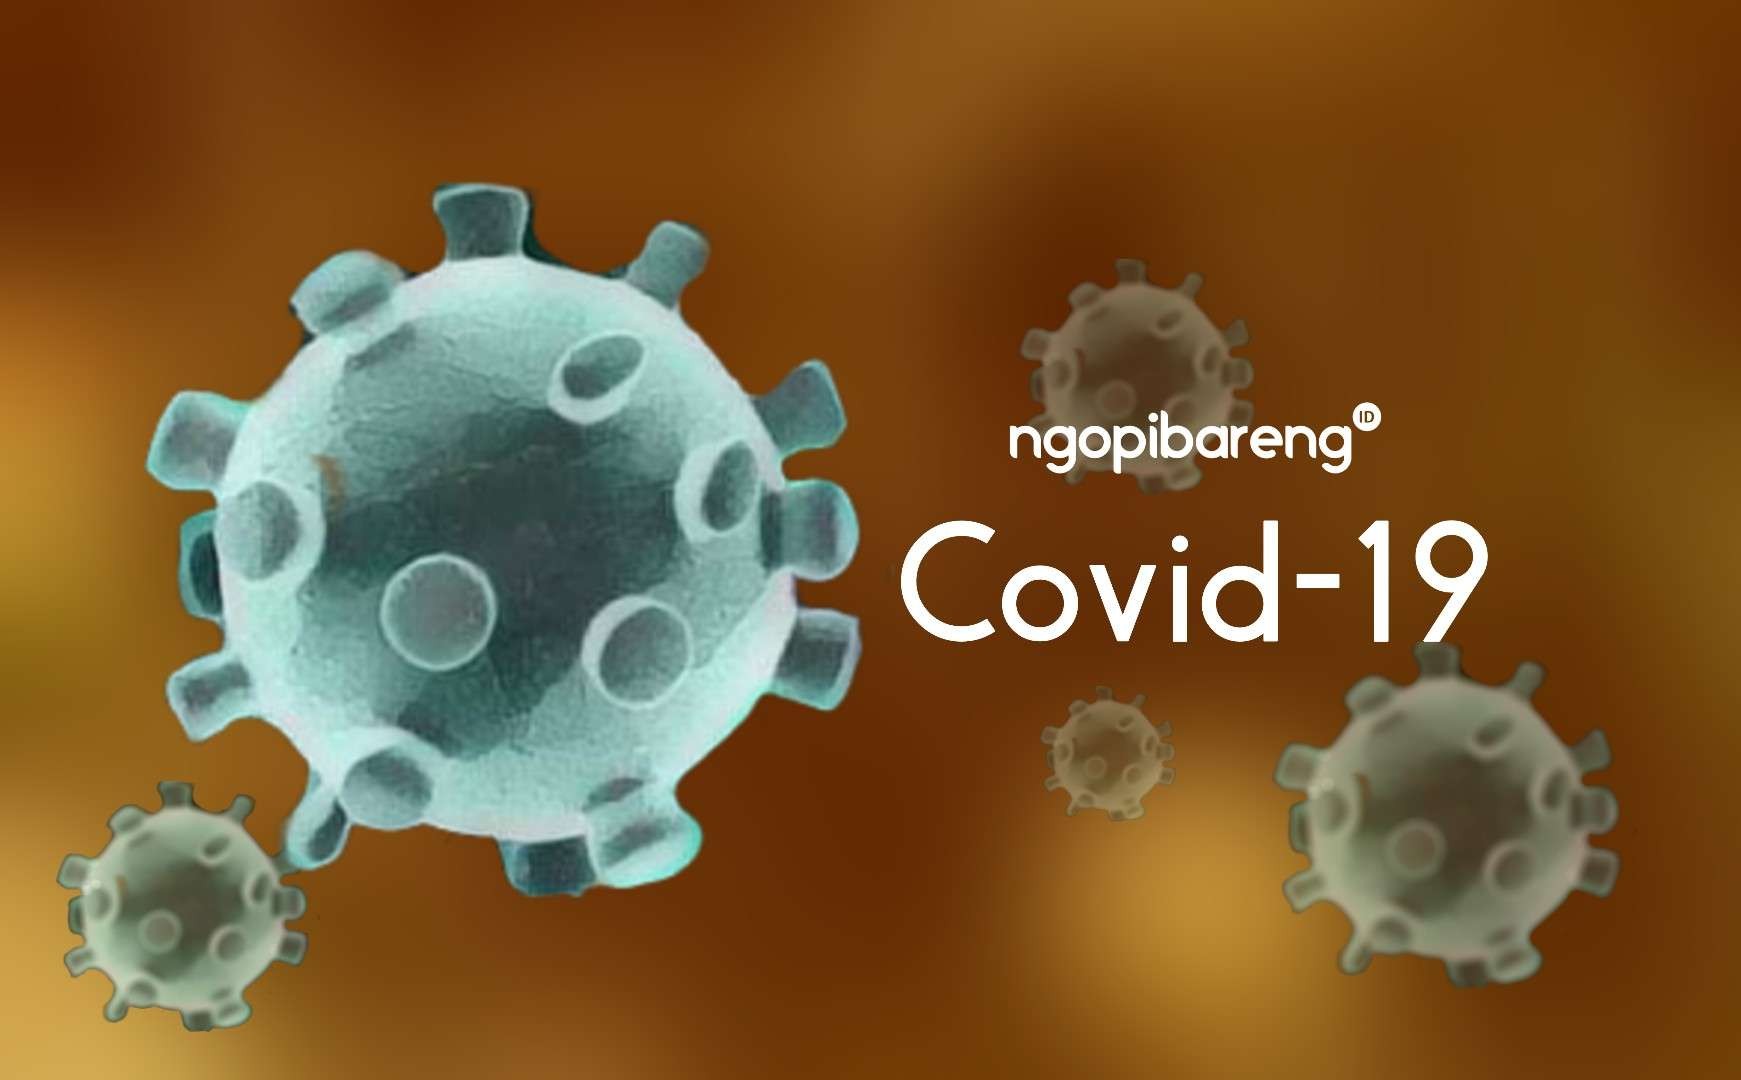 Pandemi COVID-19 di Indonesia menghadapi kemunculan varian Orthrus, selain varian XBB. 1.5 atau Kraken. (Ilustrasi: Fa Vidhi/Ngopibareng.id)